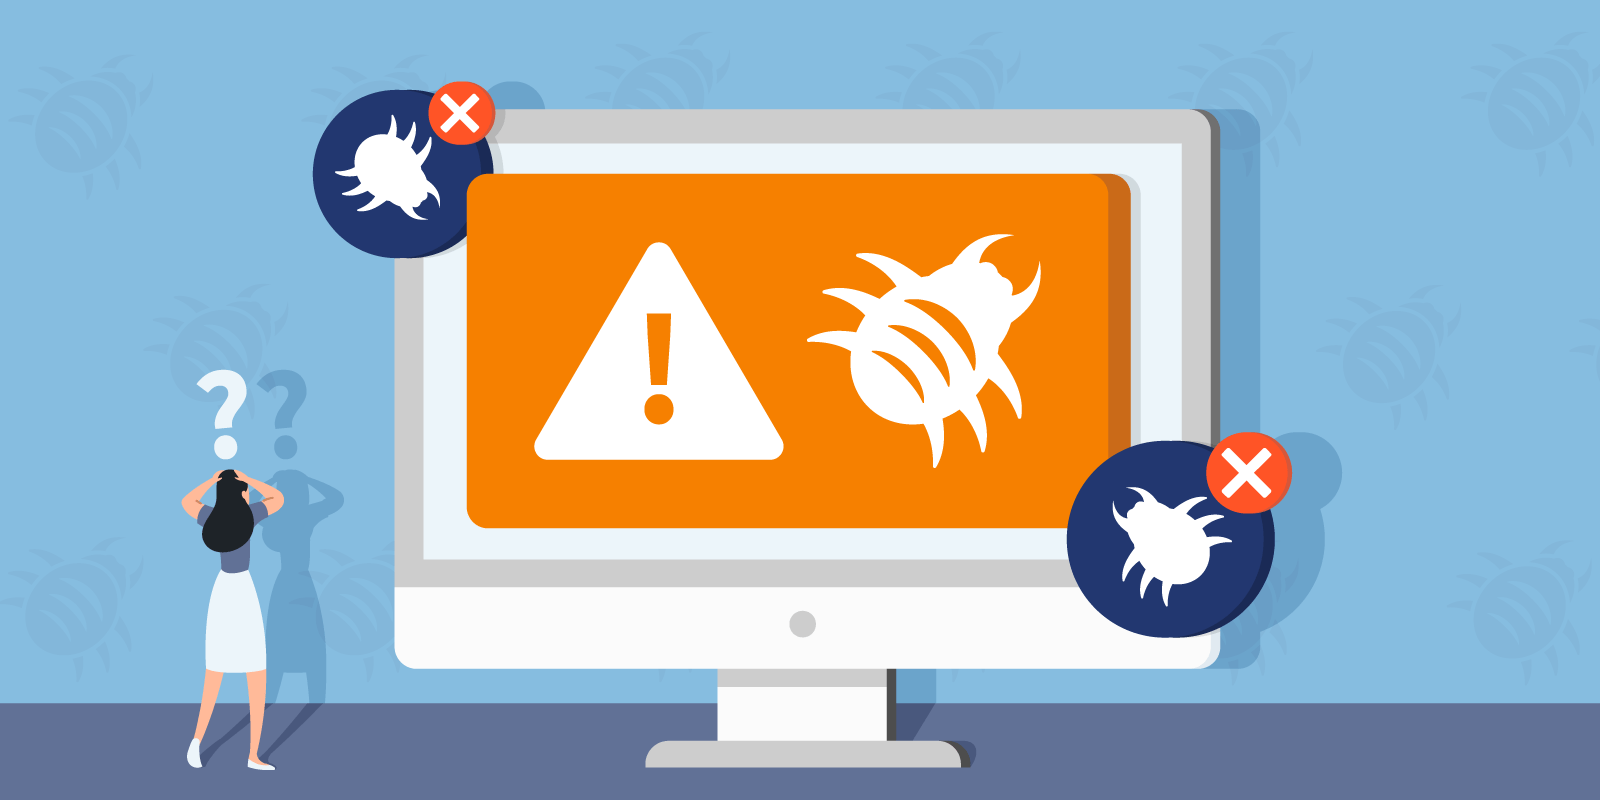 Mantenha o software antivírus atualizado
Evite clicar em links suspeitos ou baixar arquivos de fontes não confiáveis